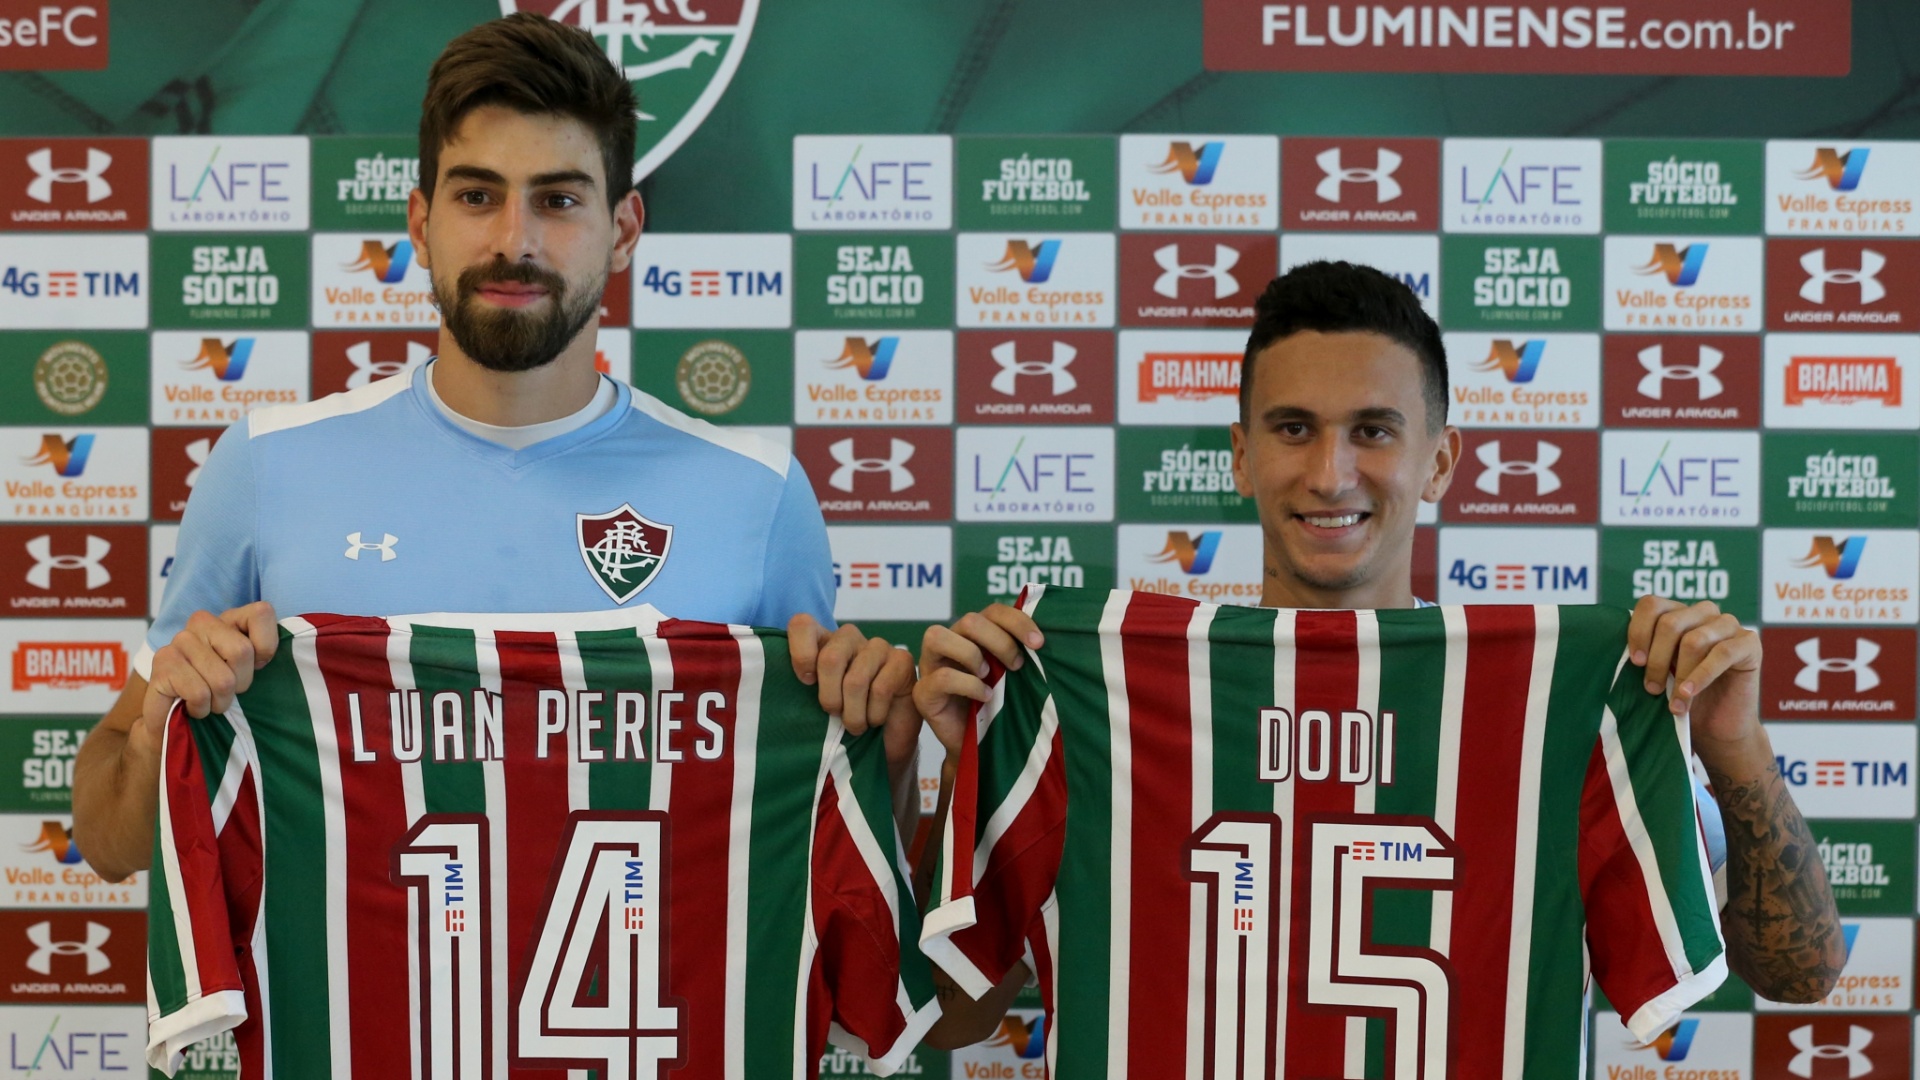 Luan Peres e Dodi são apresentados no Fluminense